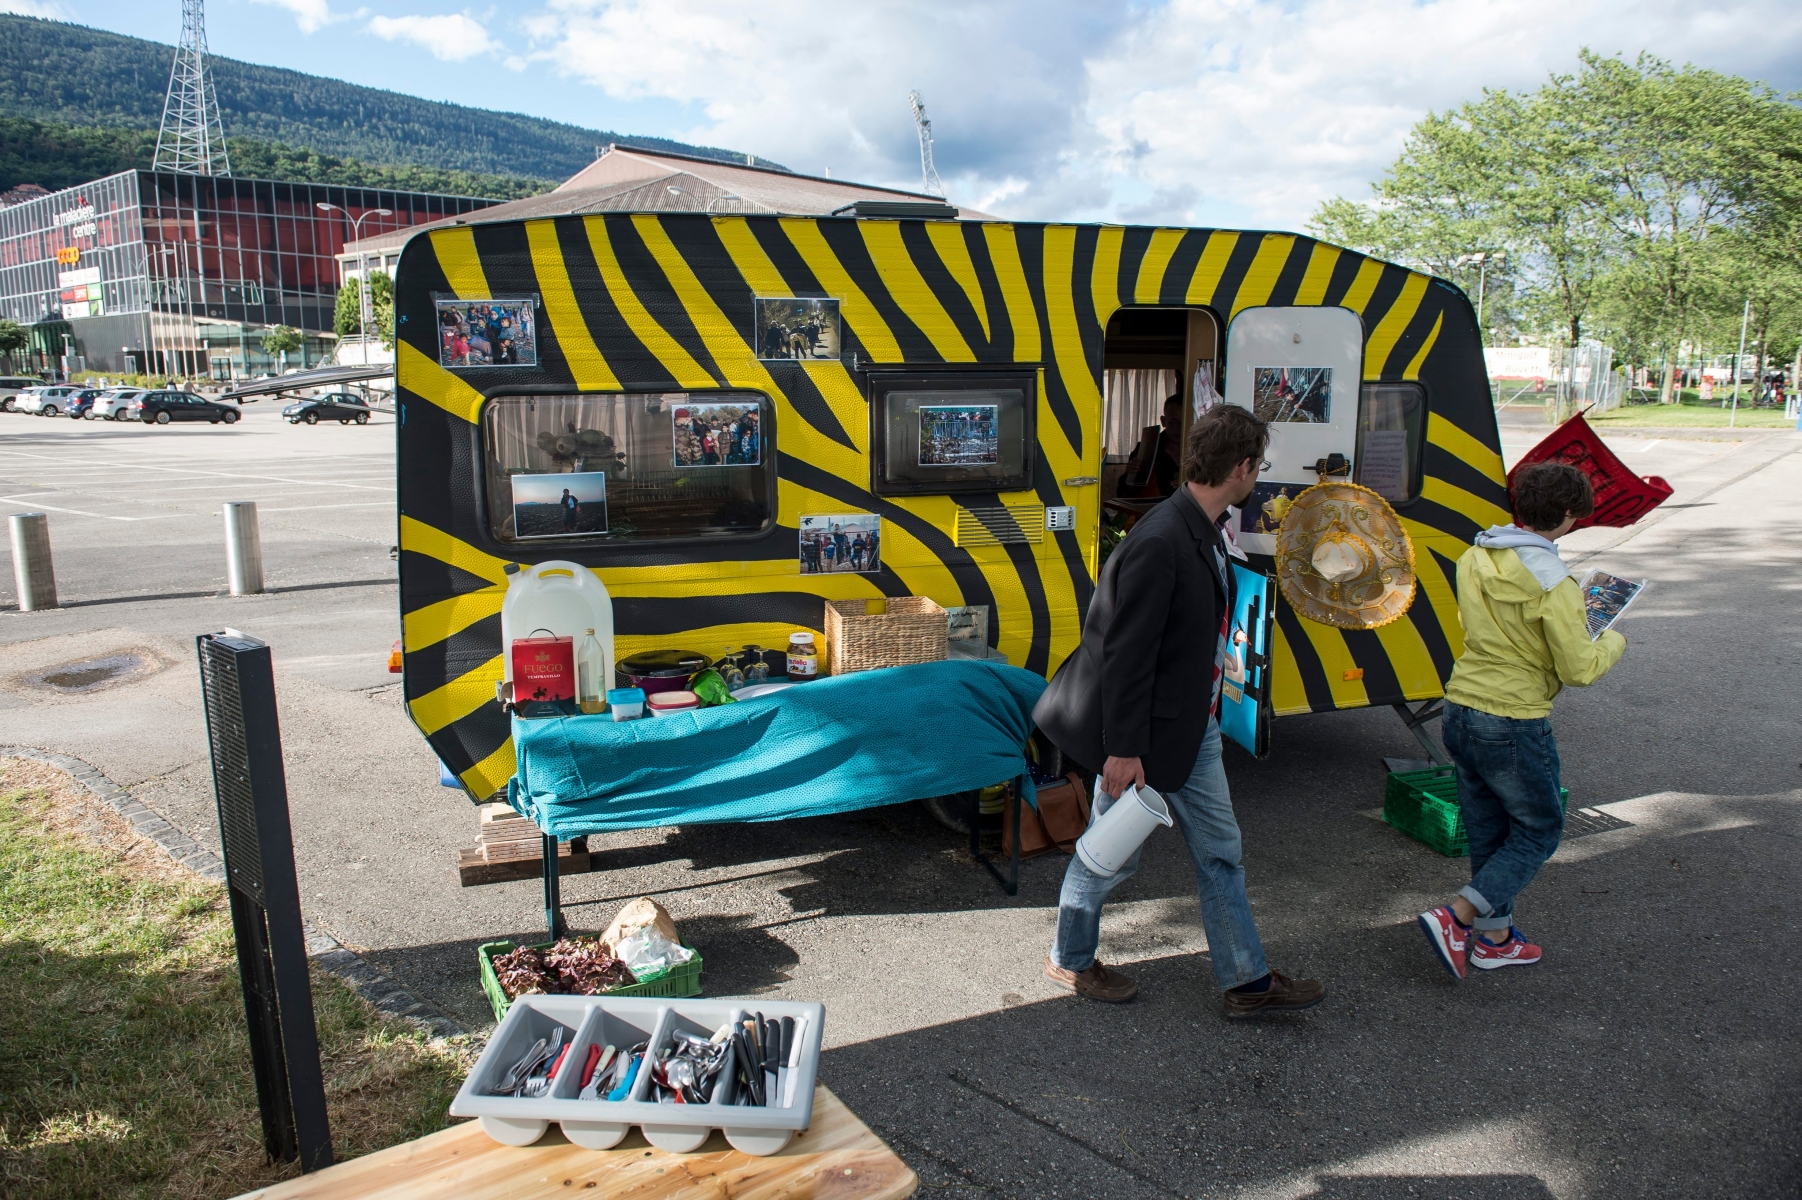 L'amer obtient le droit d'avoir son petit pied-a-terre sous forme d'une caravane en face du parking de la patinoire. 



Neuchatel, le 13.07.2016



Photo : Lucas Vuitel